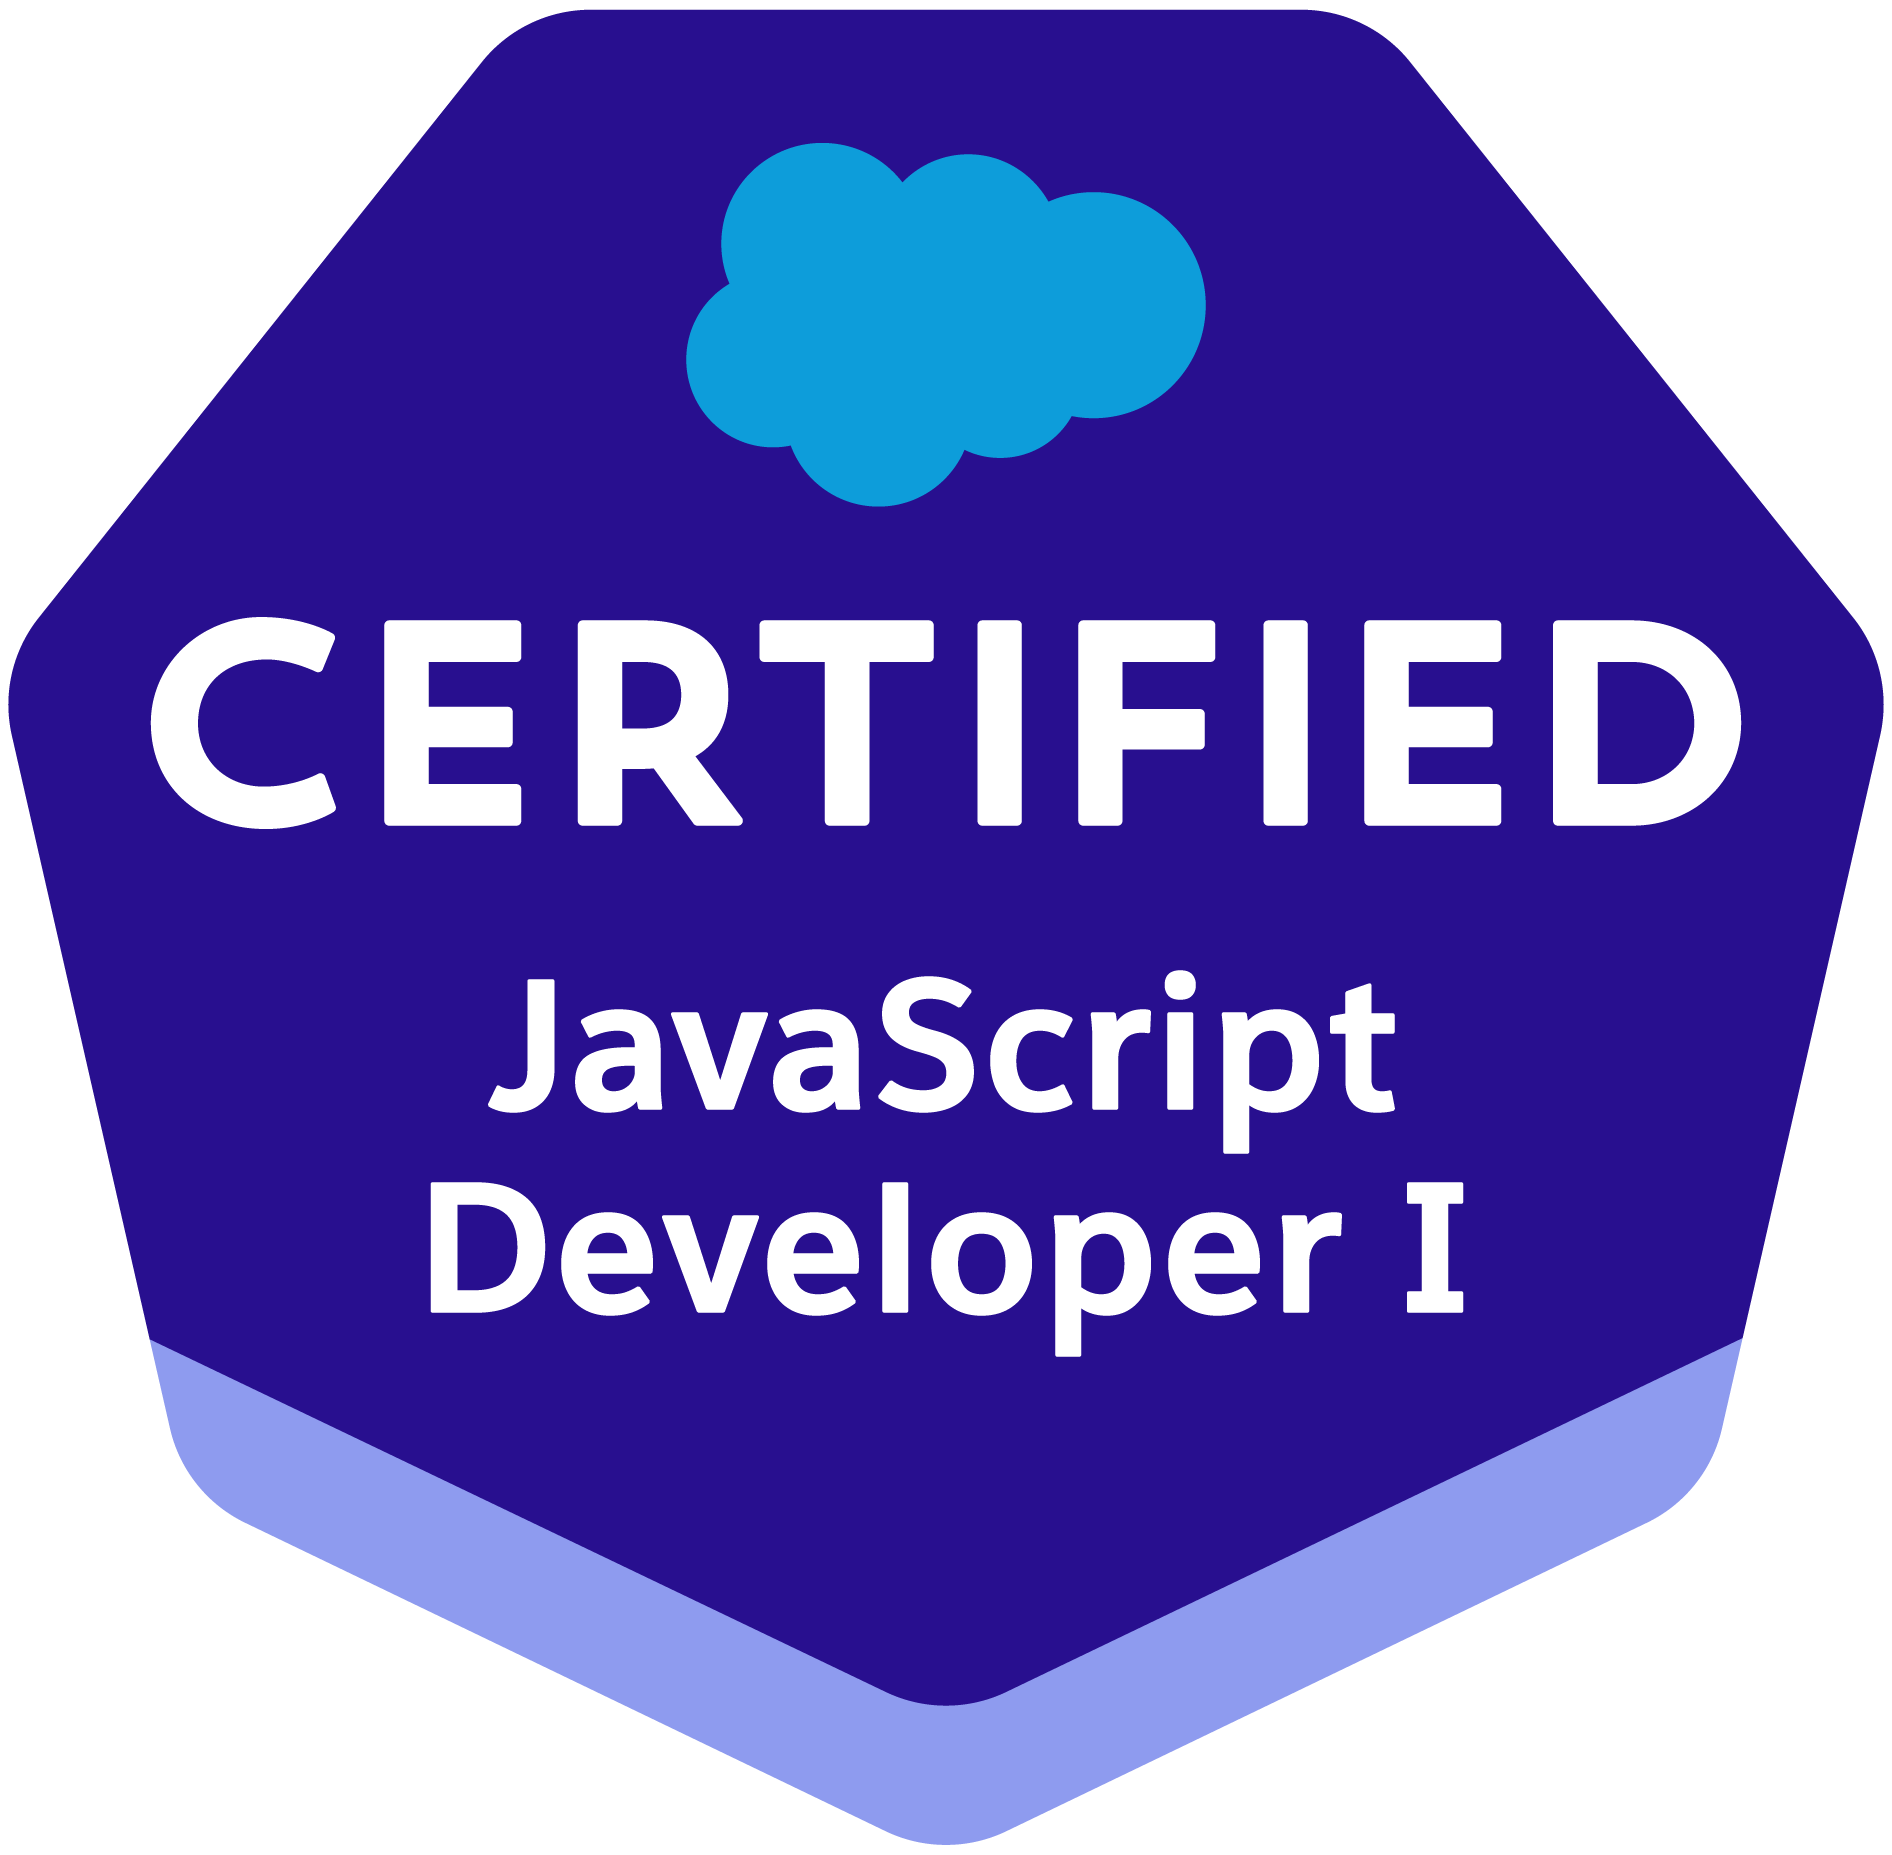 JavaScript Developer I certification